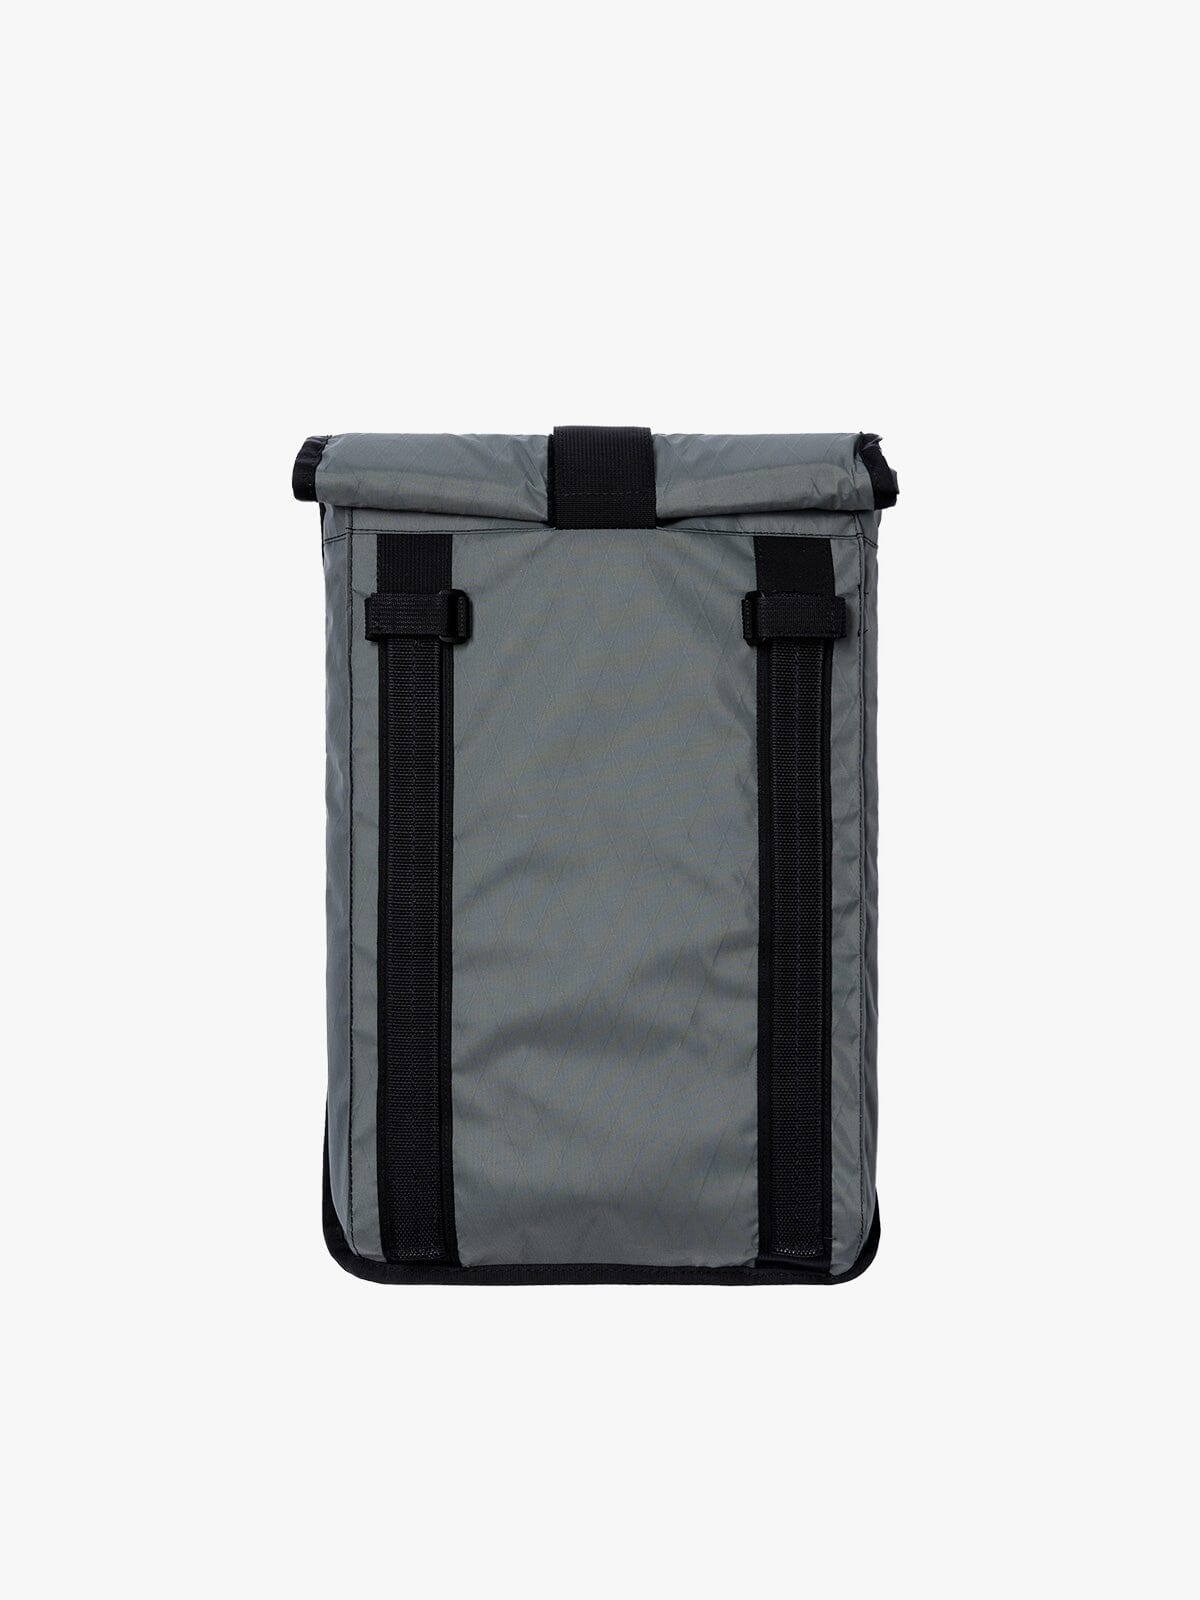 Arkiv Laptop Case by Mission Workshop - Weatherproof Bags & Technical Apparel - San Francisco & Los Angeles - Construit pour durer - Garanti pour toujours